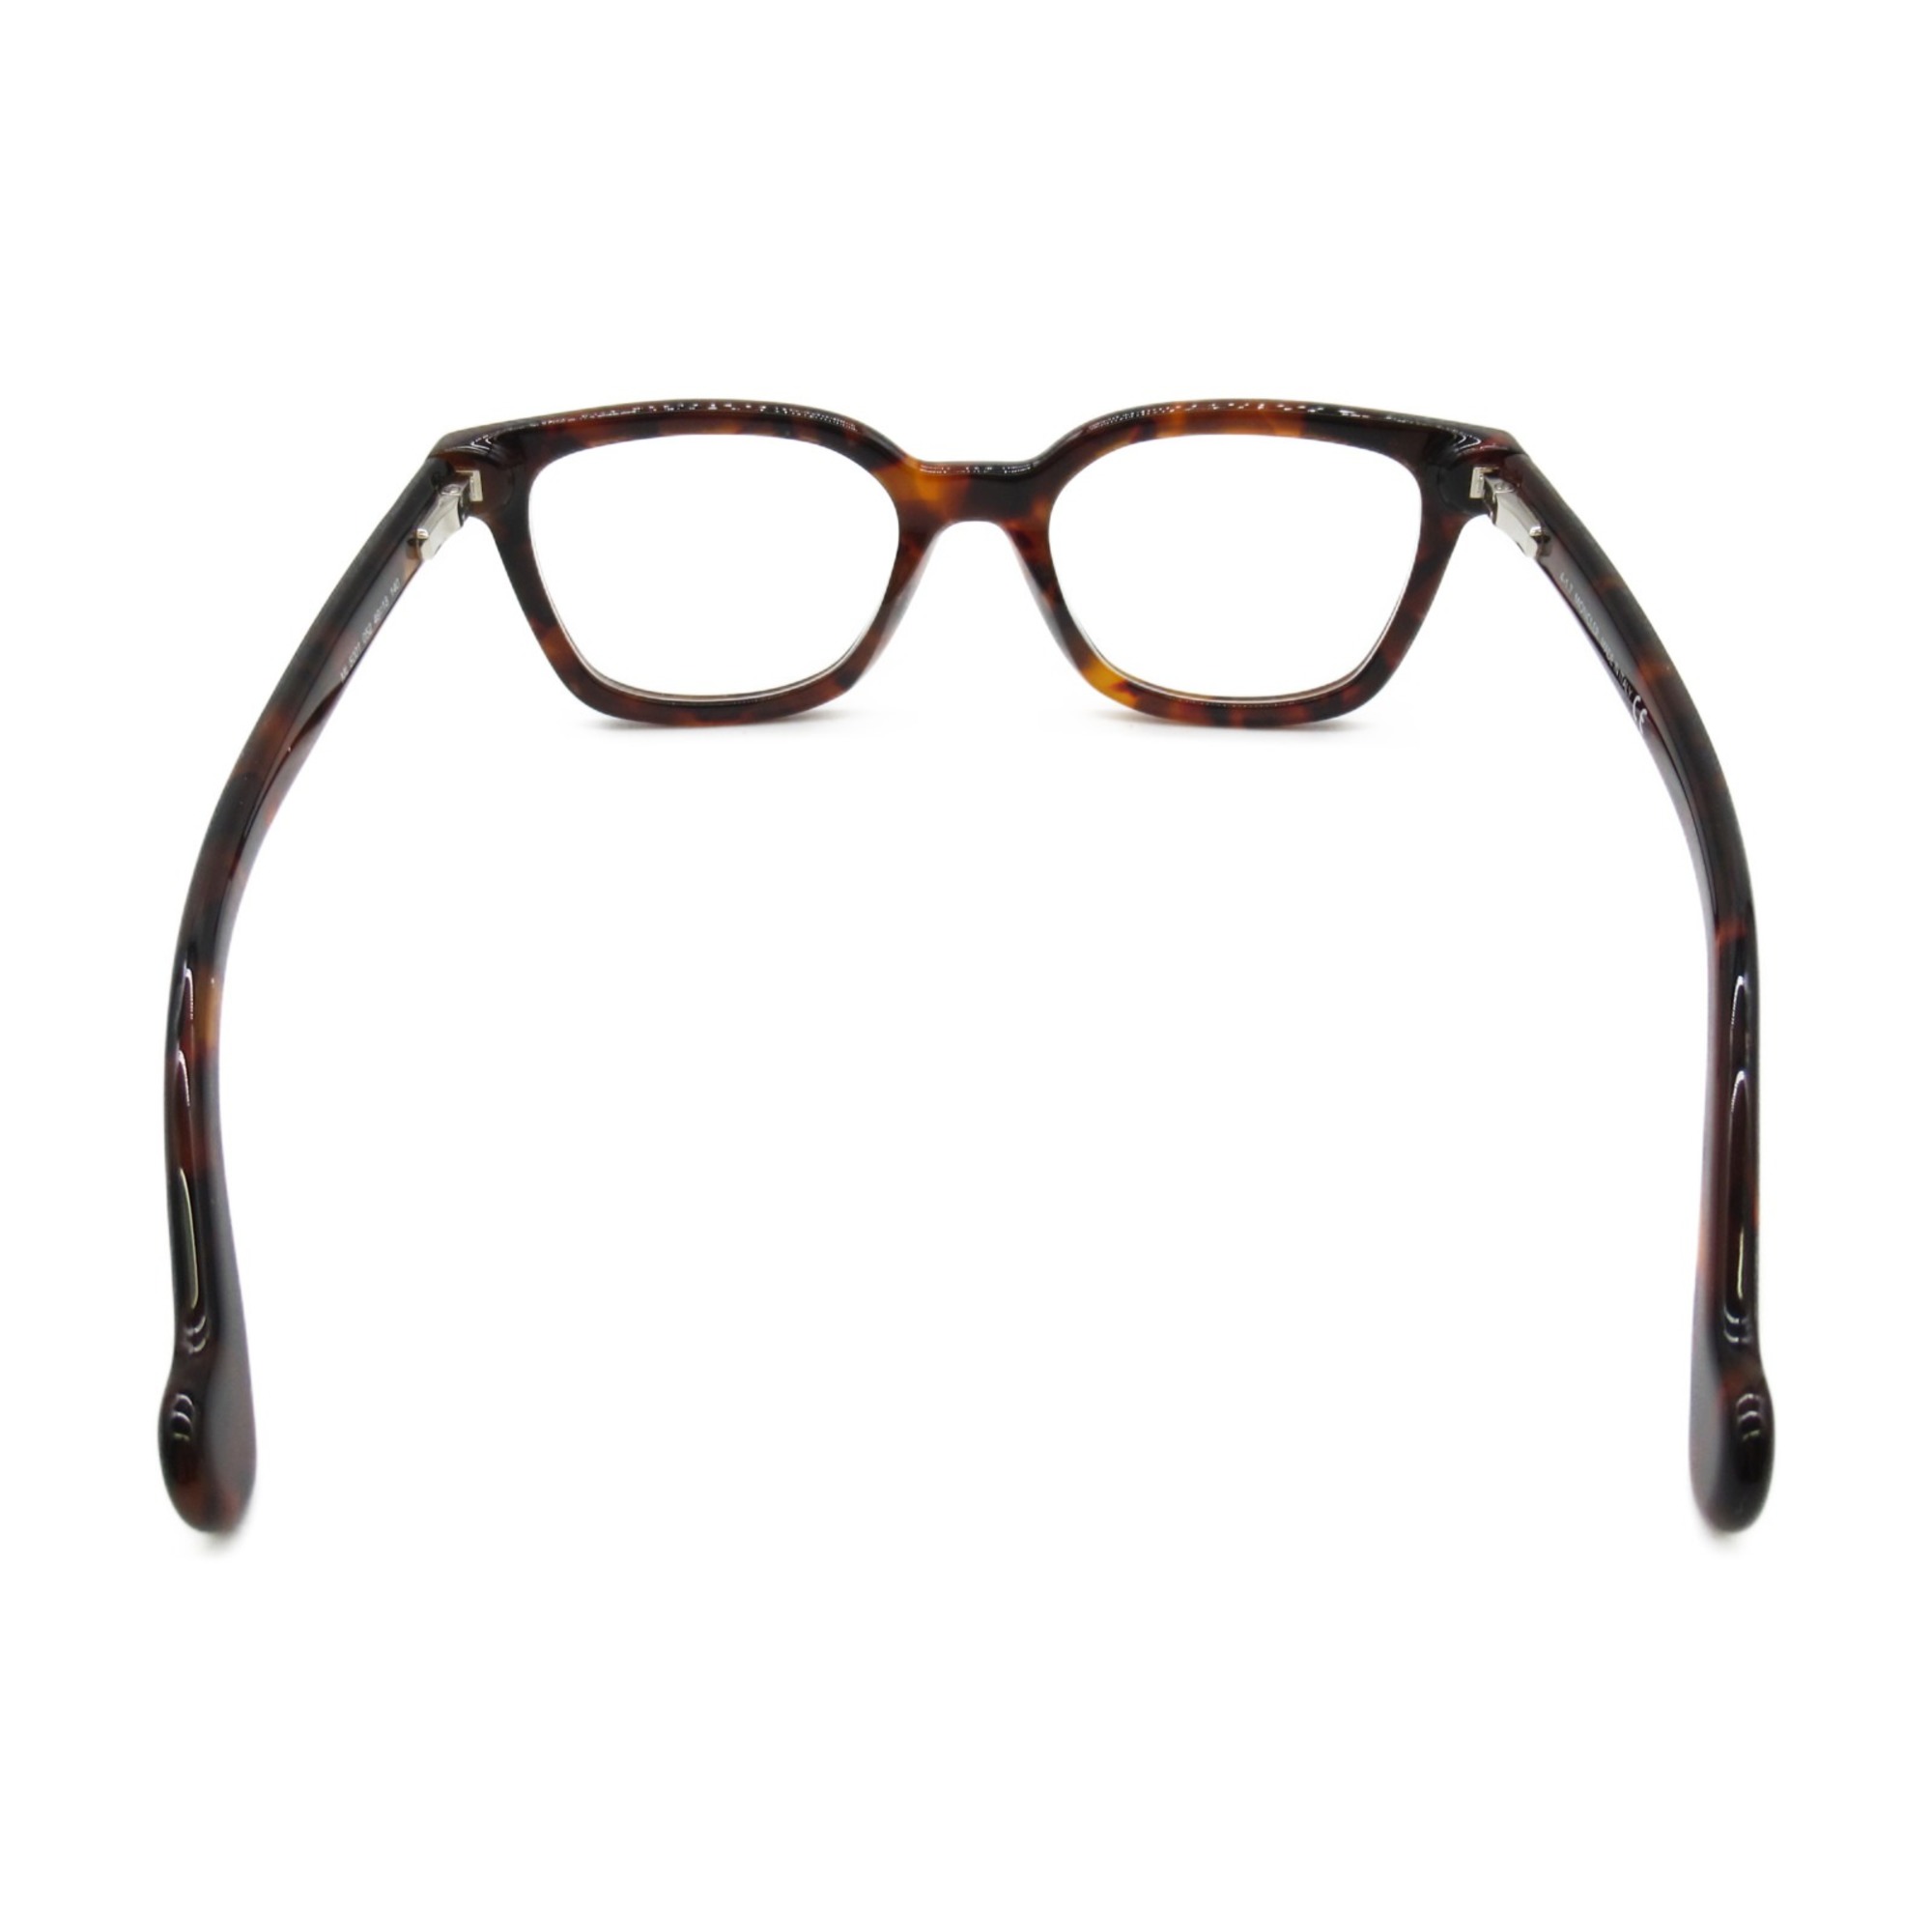 MONCLER Date Glasses Glasses Frame Brown Tortoise pattern Plastic 5001 052(49)